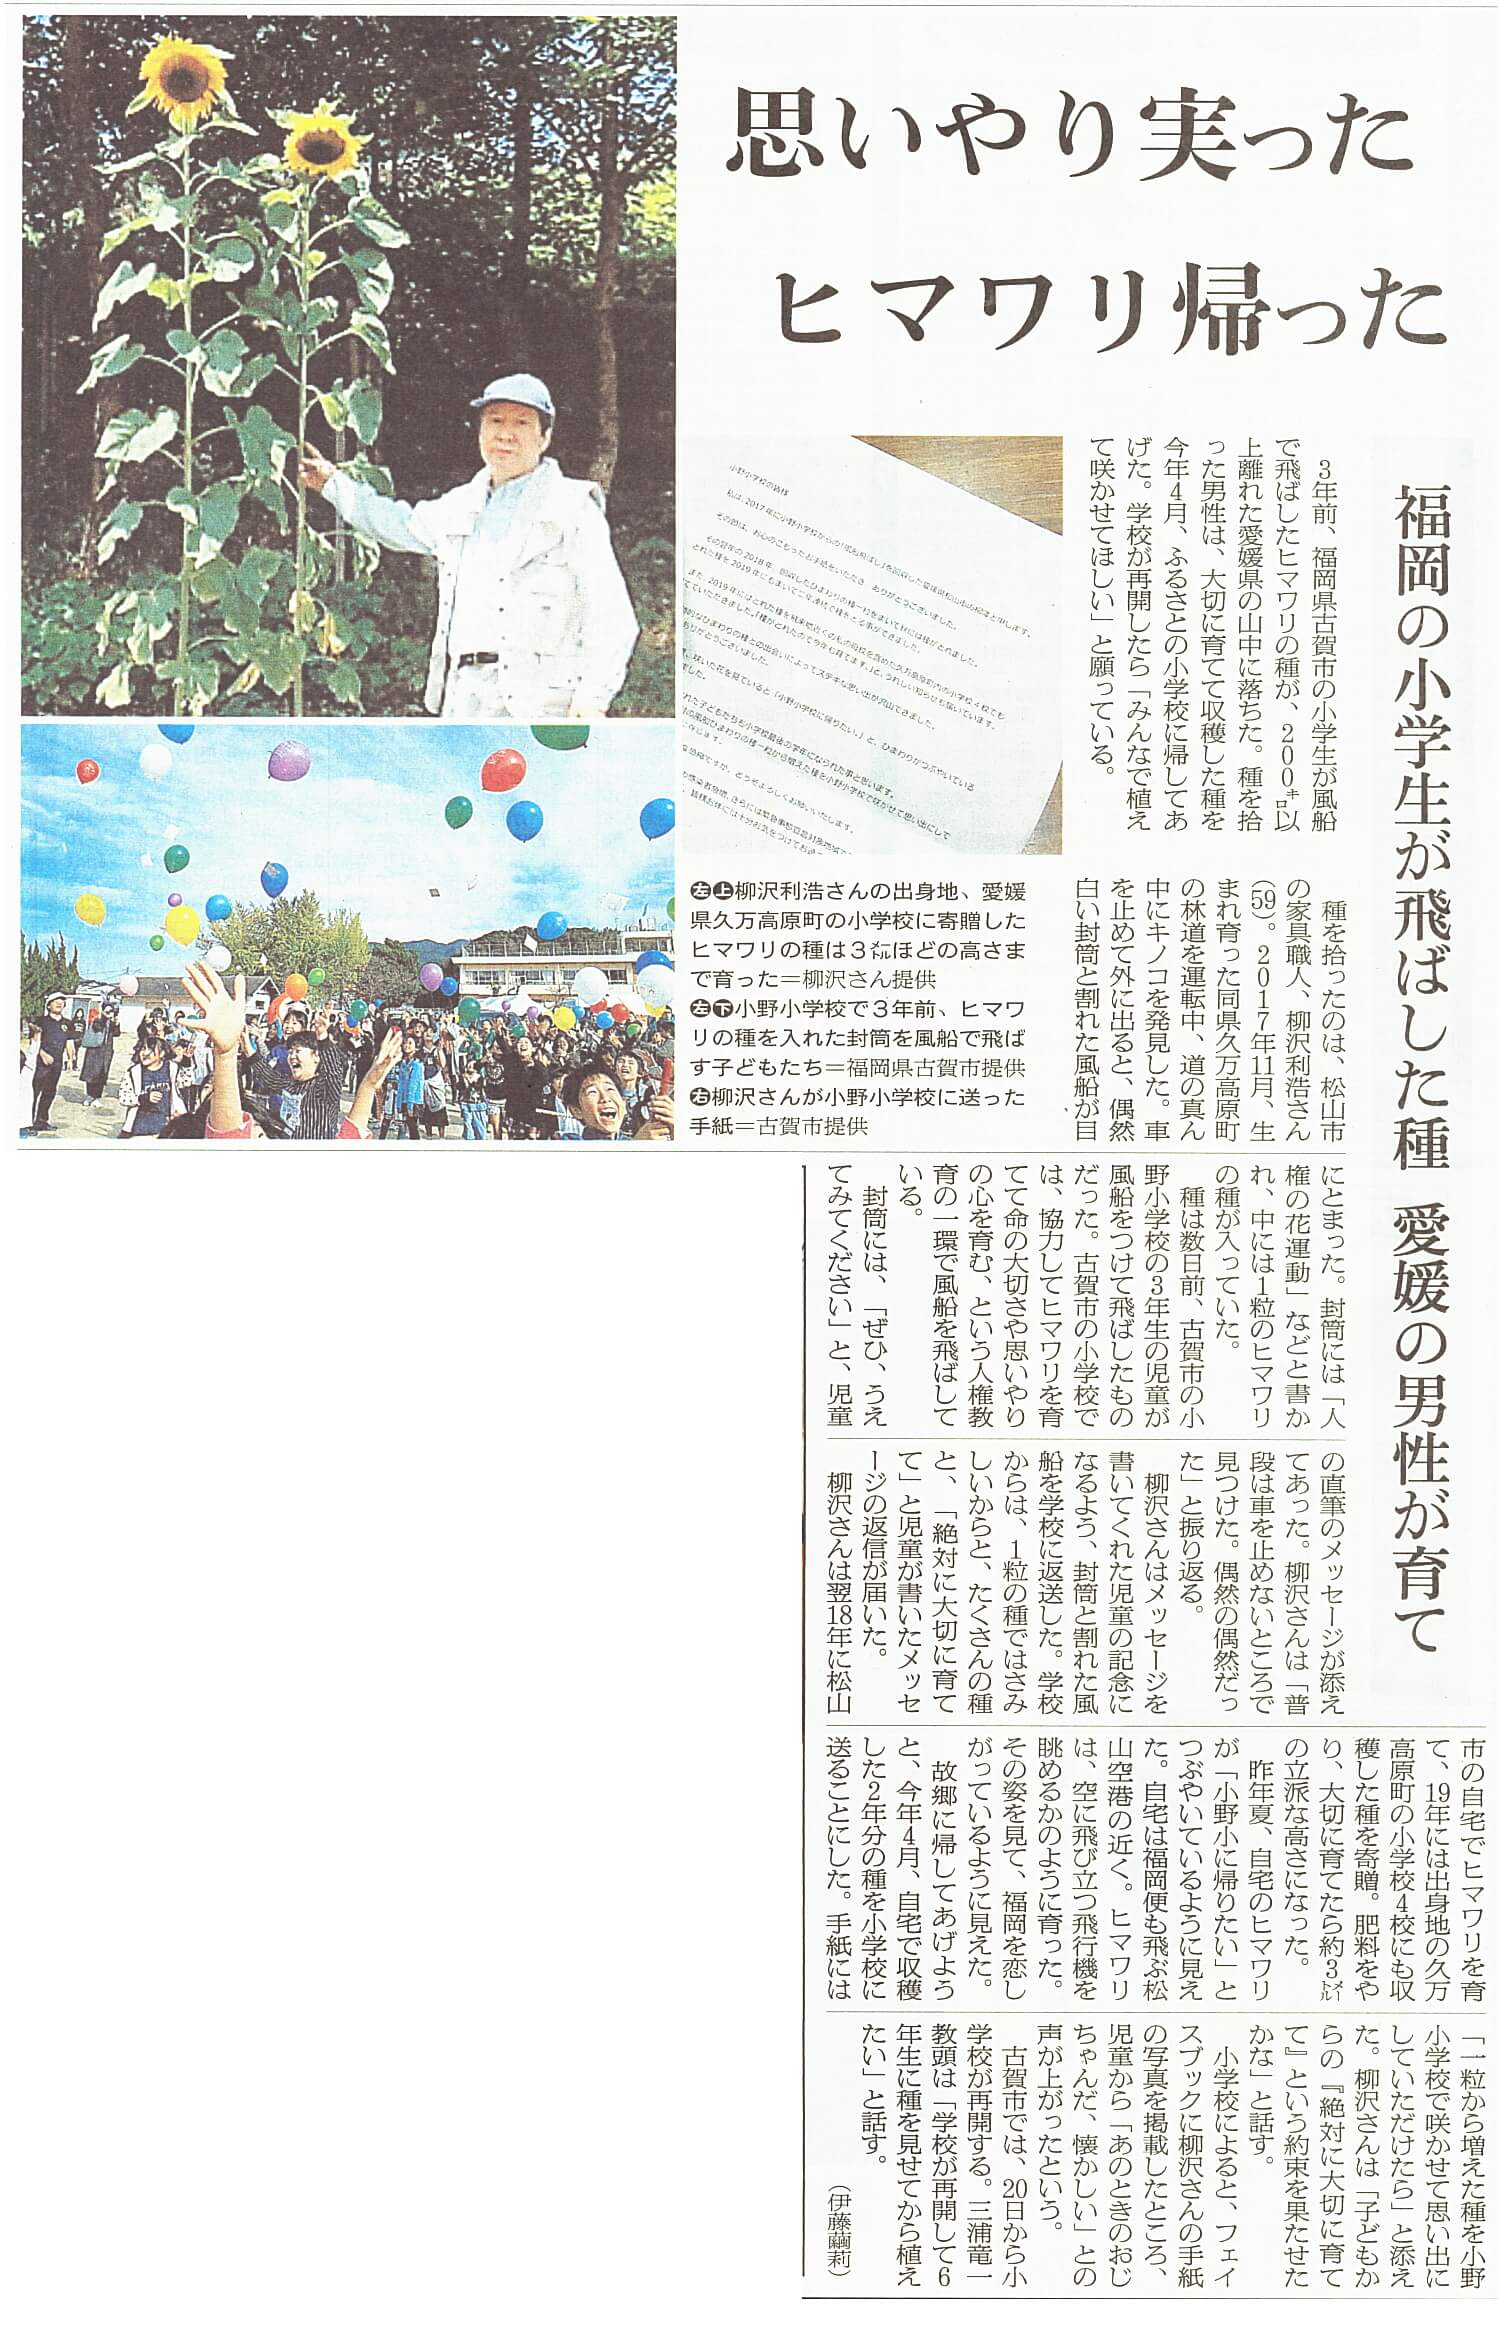 福岡県古賀市立小野小学校「風船ひまわり」の話題が新聞に掲載されました。